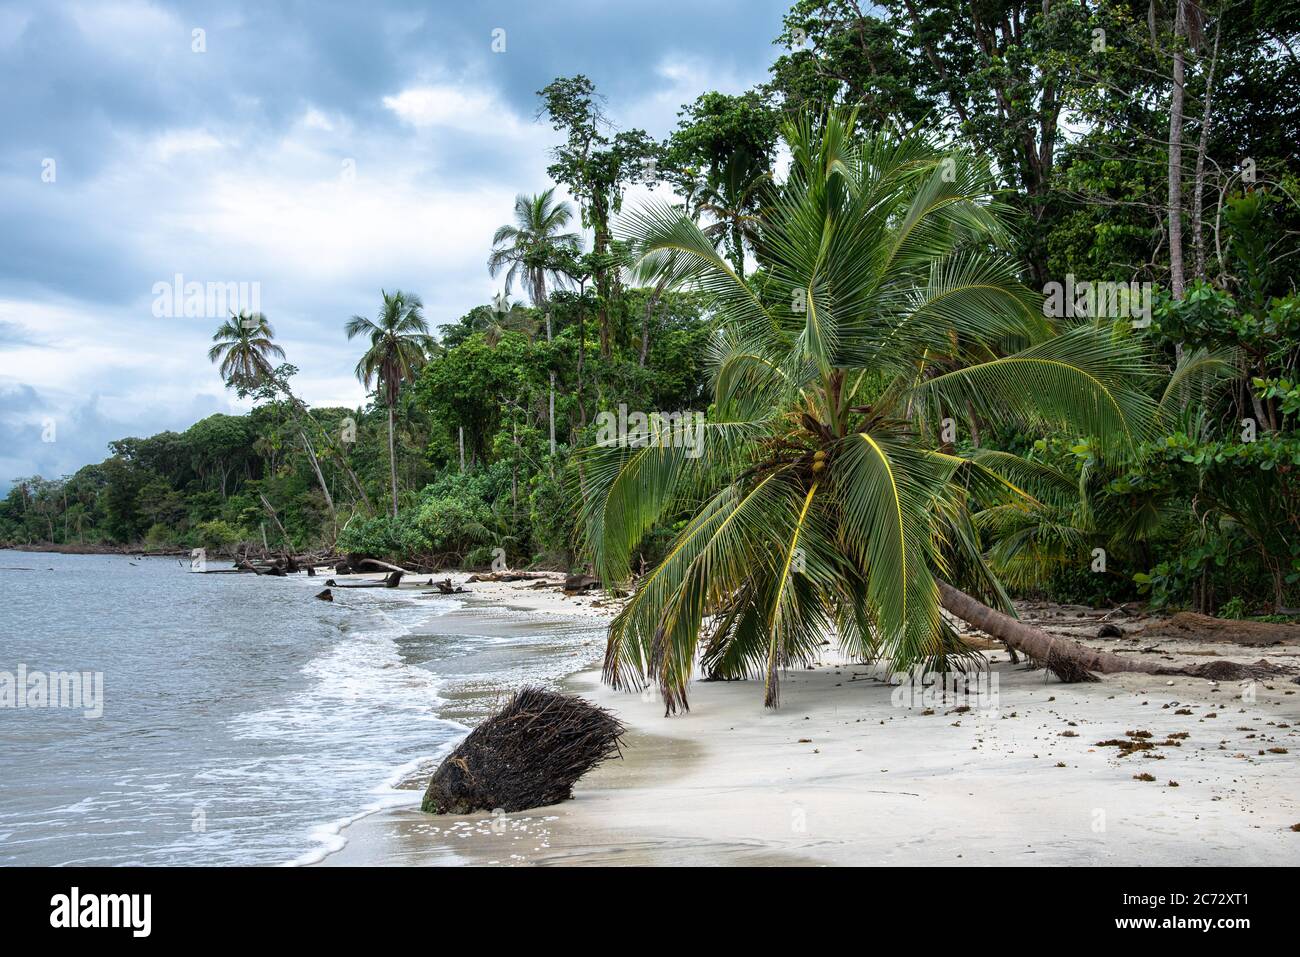 Einsame Palme am wilden karibikstrand, Costa Rica cahuita mittelamerika, carib Paradies, gebogene krumme gebogene Palme wilde rohe Natur Regenwald Stockfoto